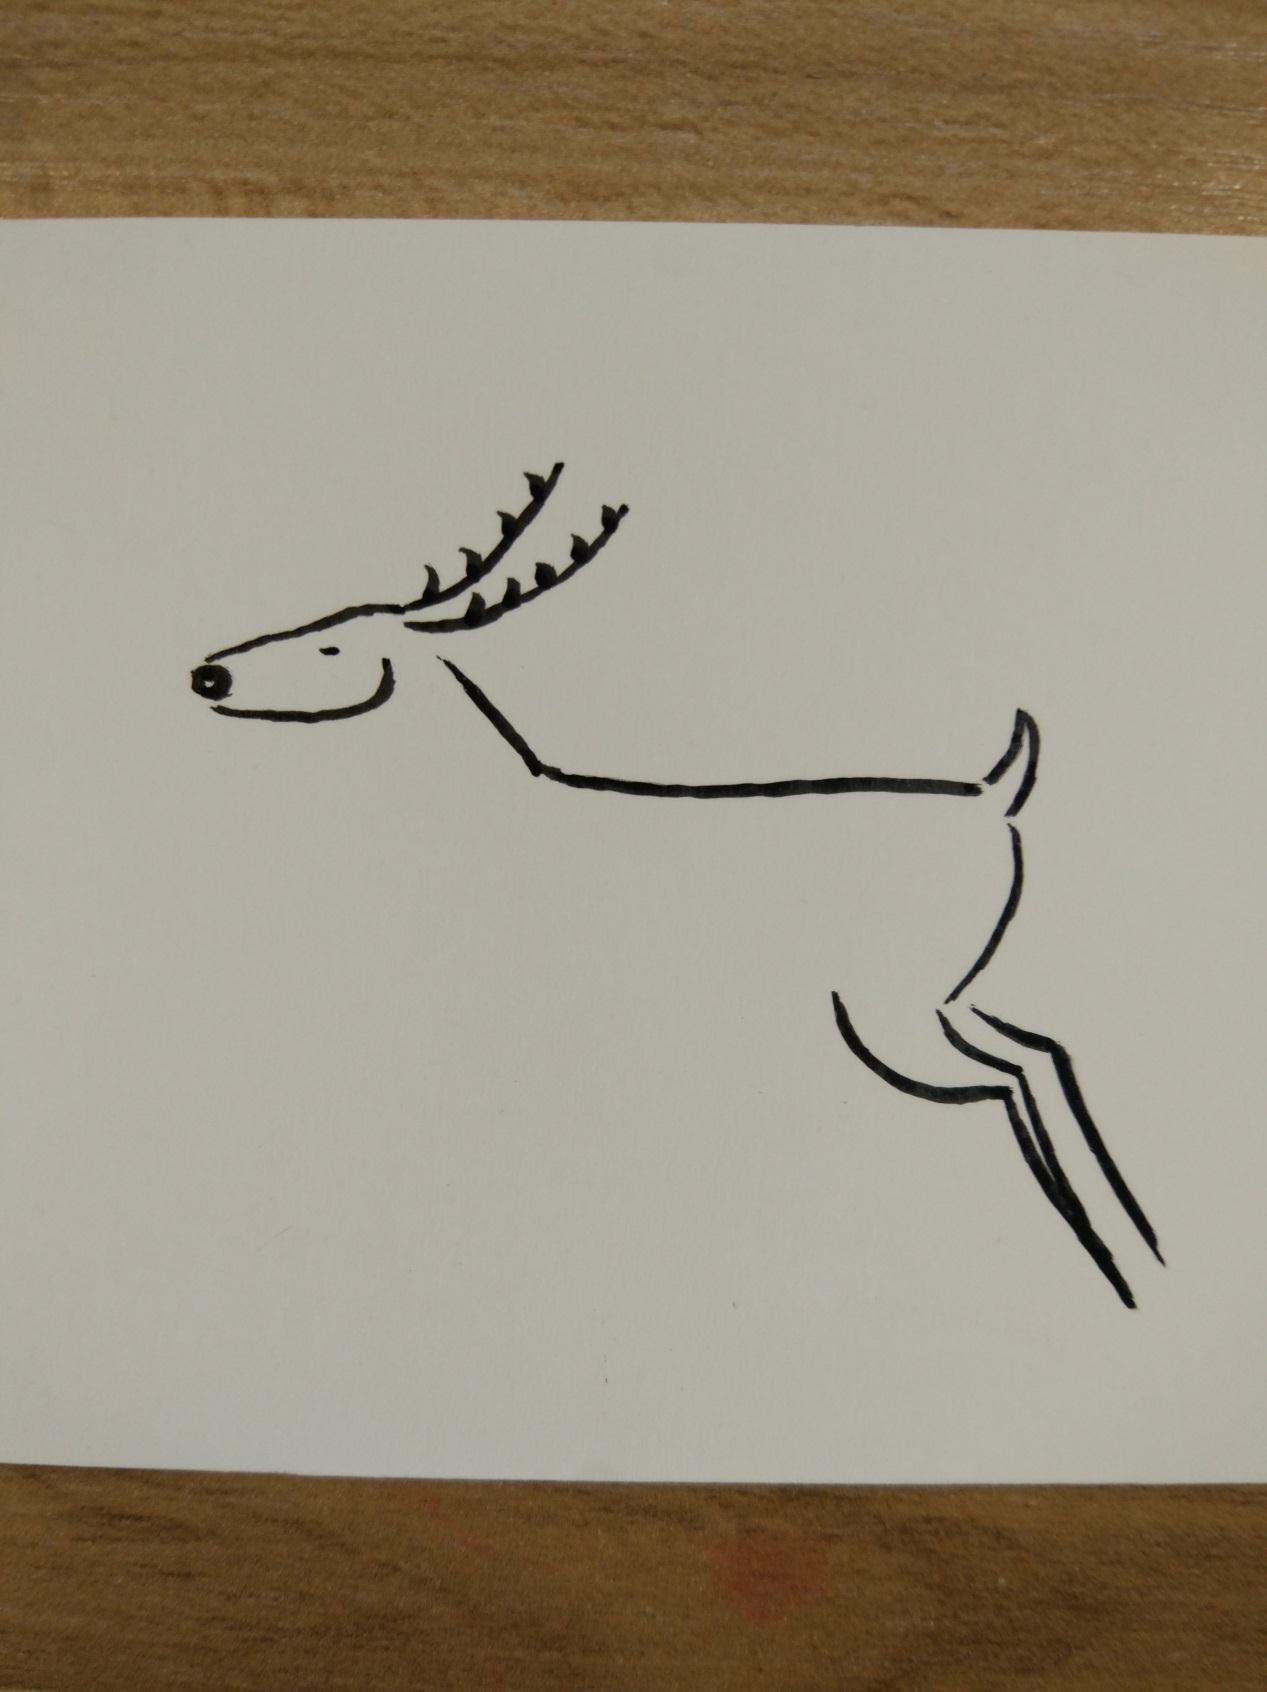 宋宋原创DIY彩绘作品 可爱的小鹿手绘简笔画步骤╭★肉丁网